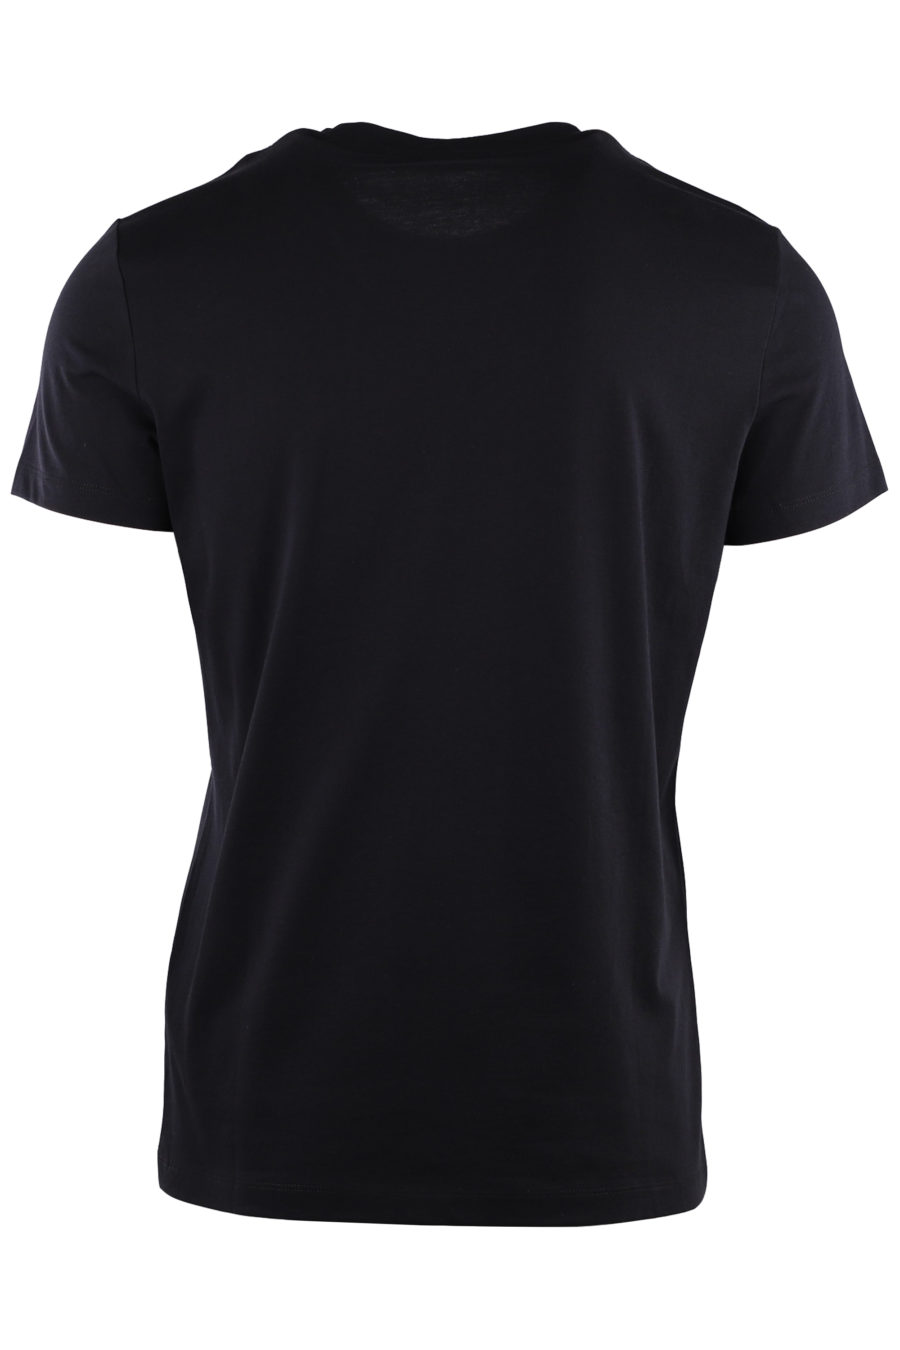 Camiseta negra con logo de terciopelo blanco - 1b404a24d2c11f2dc711f94c66423eb234428d24